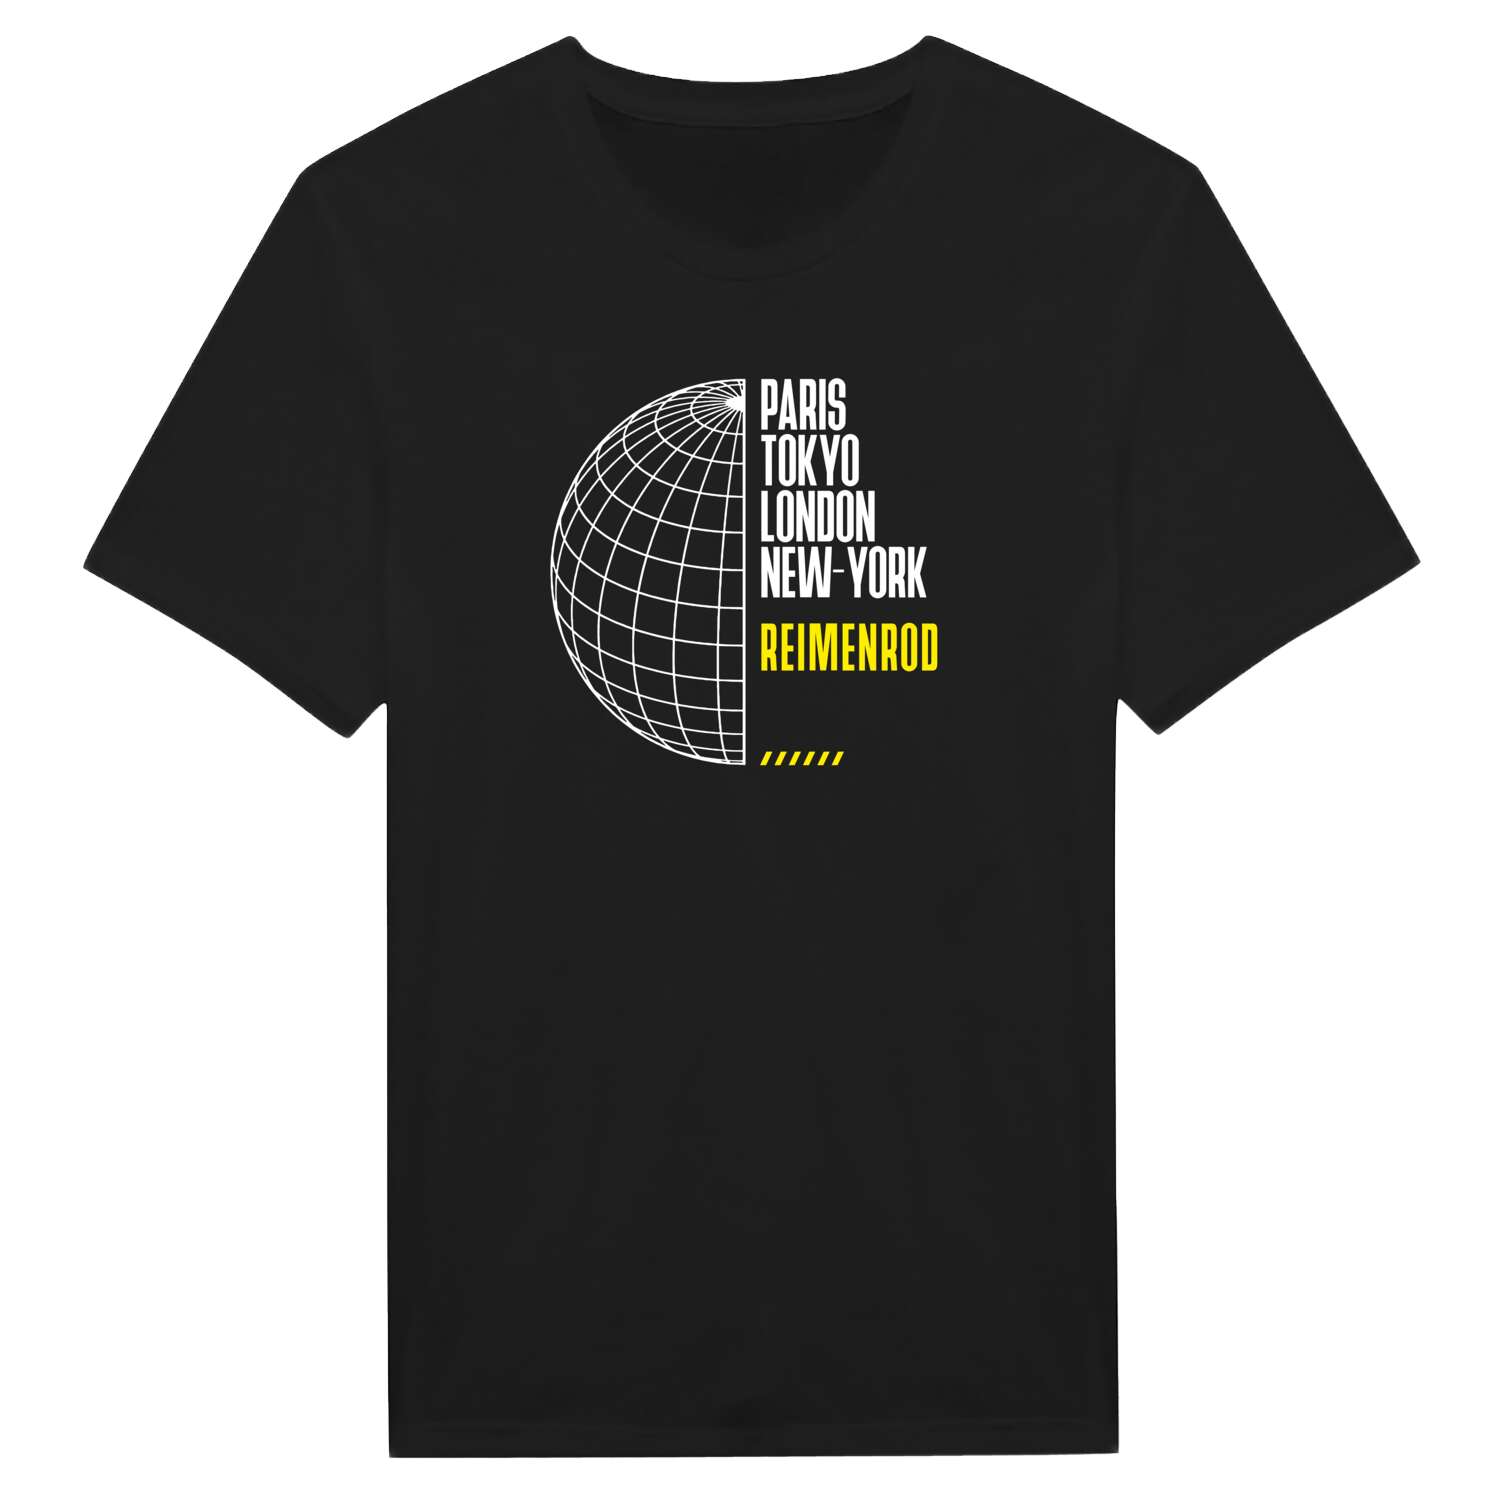 Reimenrod T-Shirt »Paris Tokyo London«